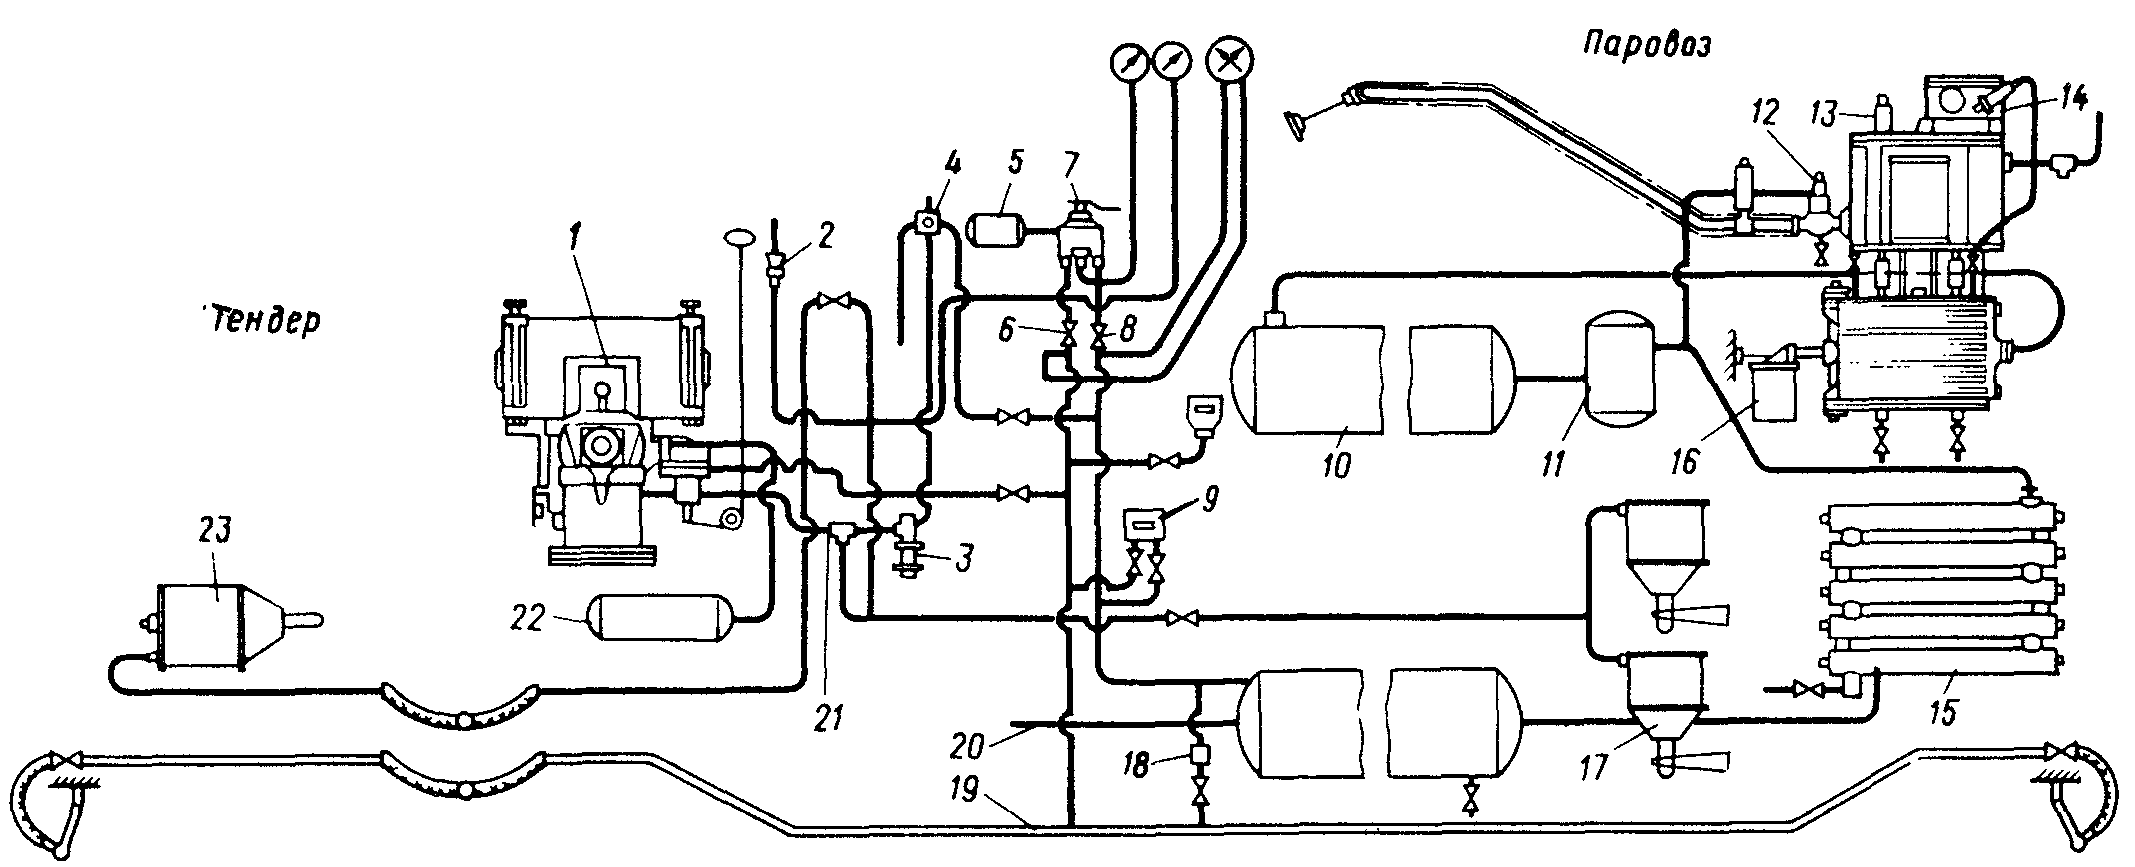 Схема тормозного оборудования паровоза Л